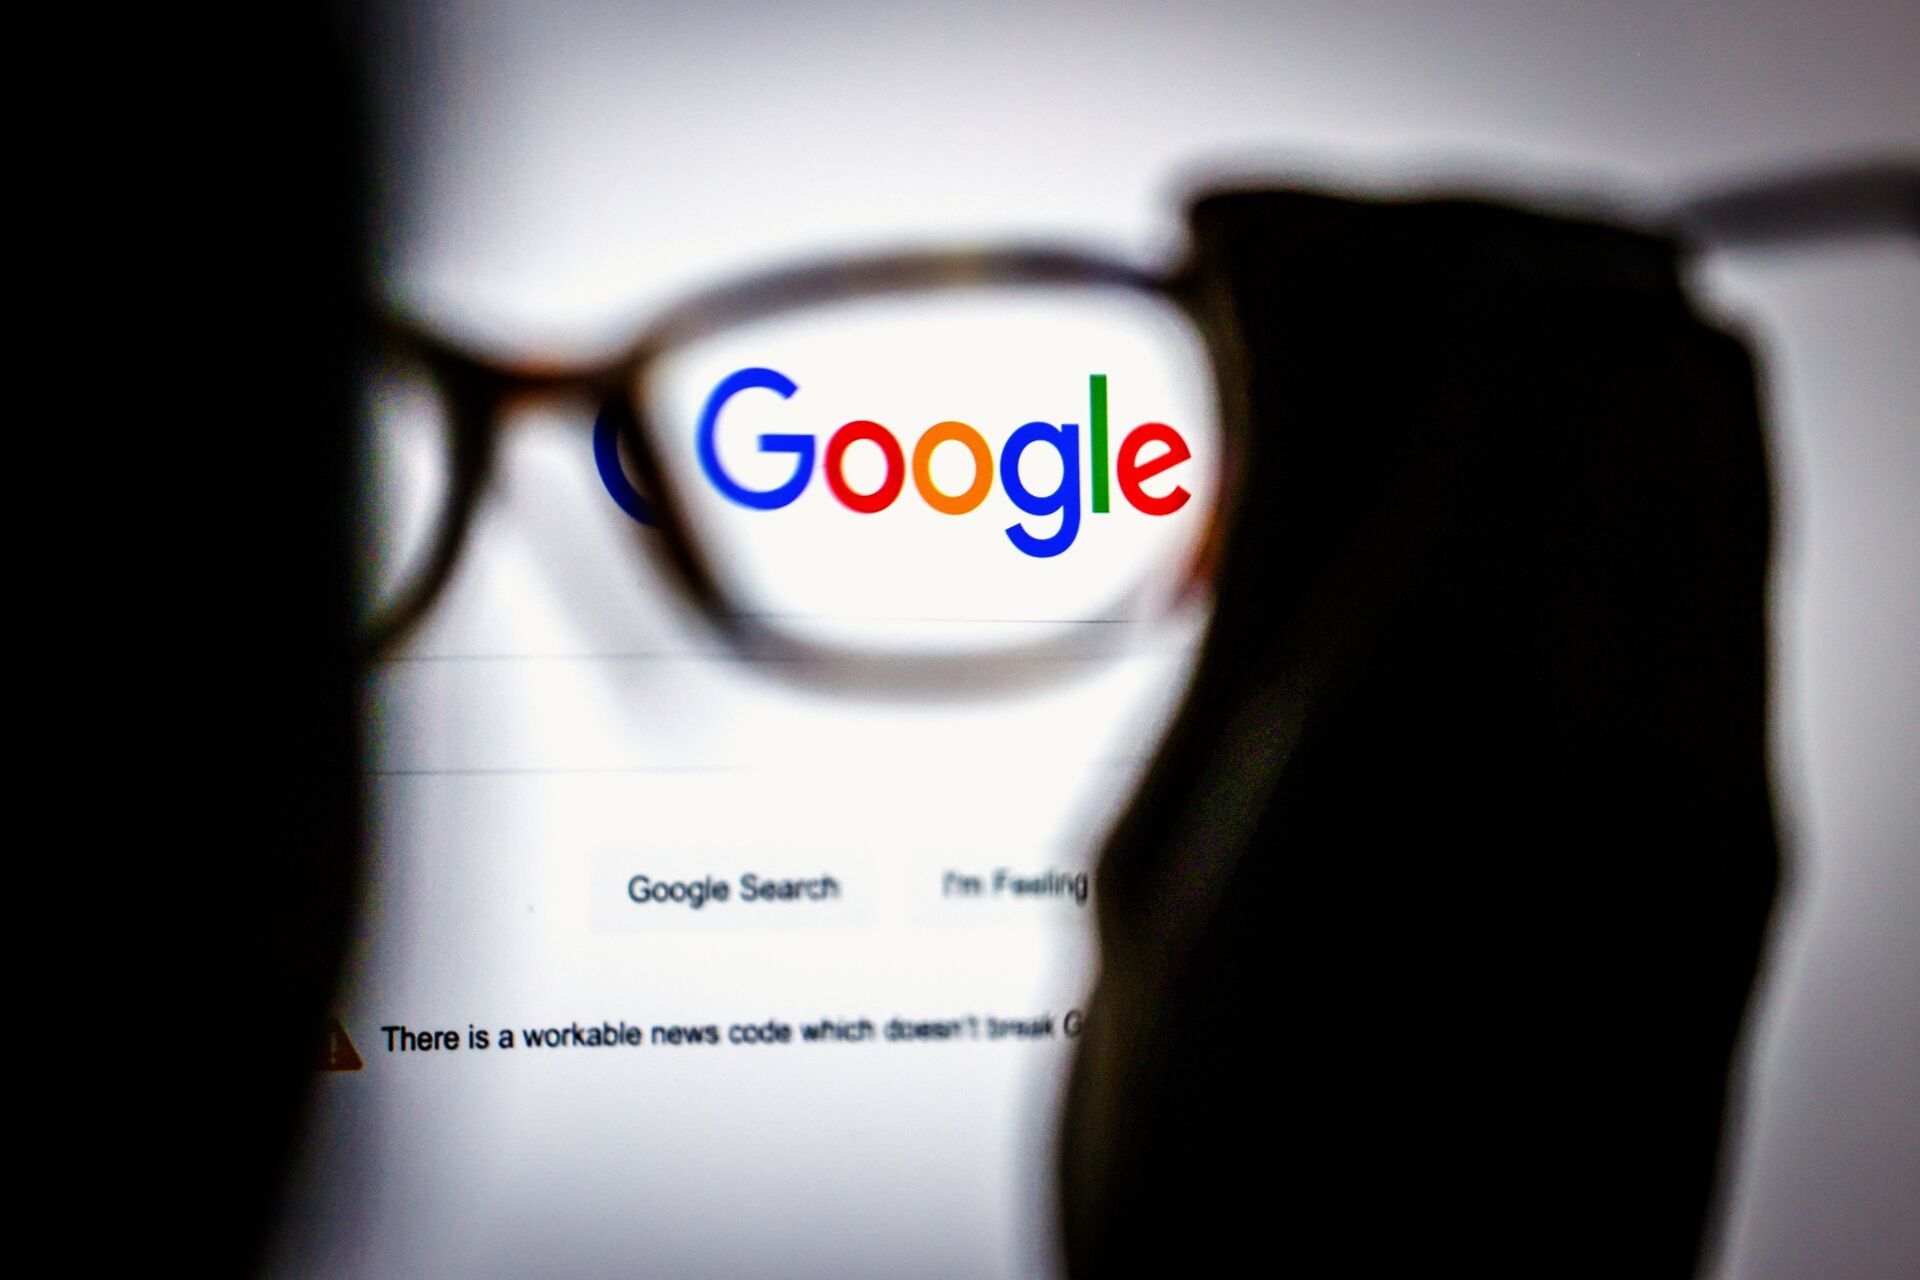 لوگو گوگل سرچ / Google Search در شیشه عینک